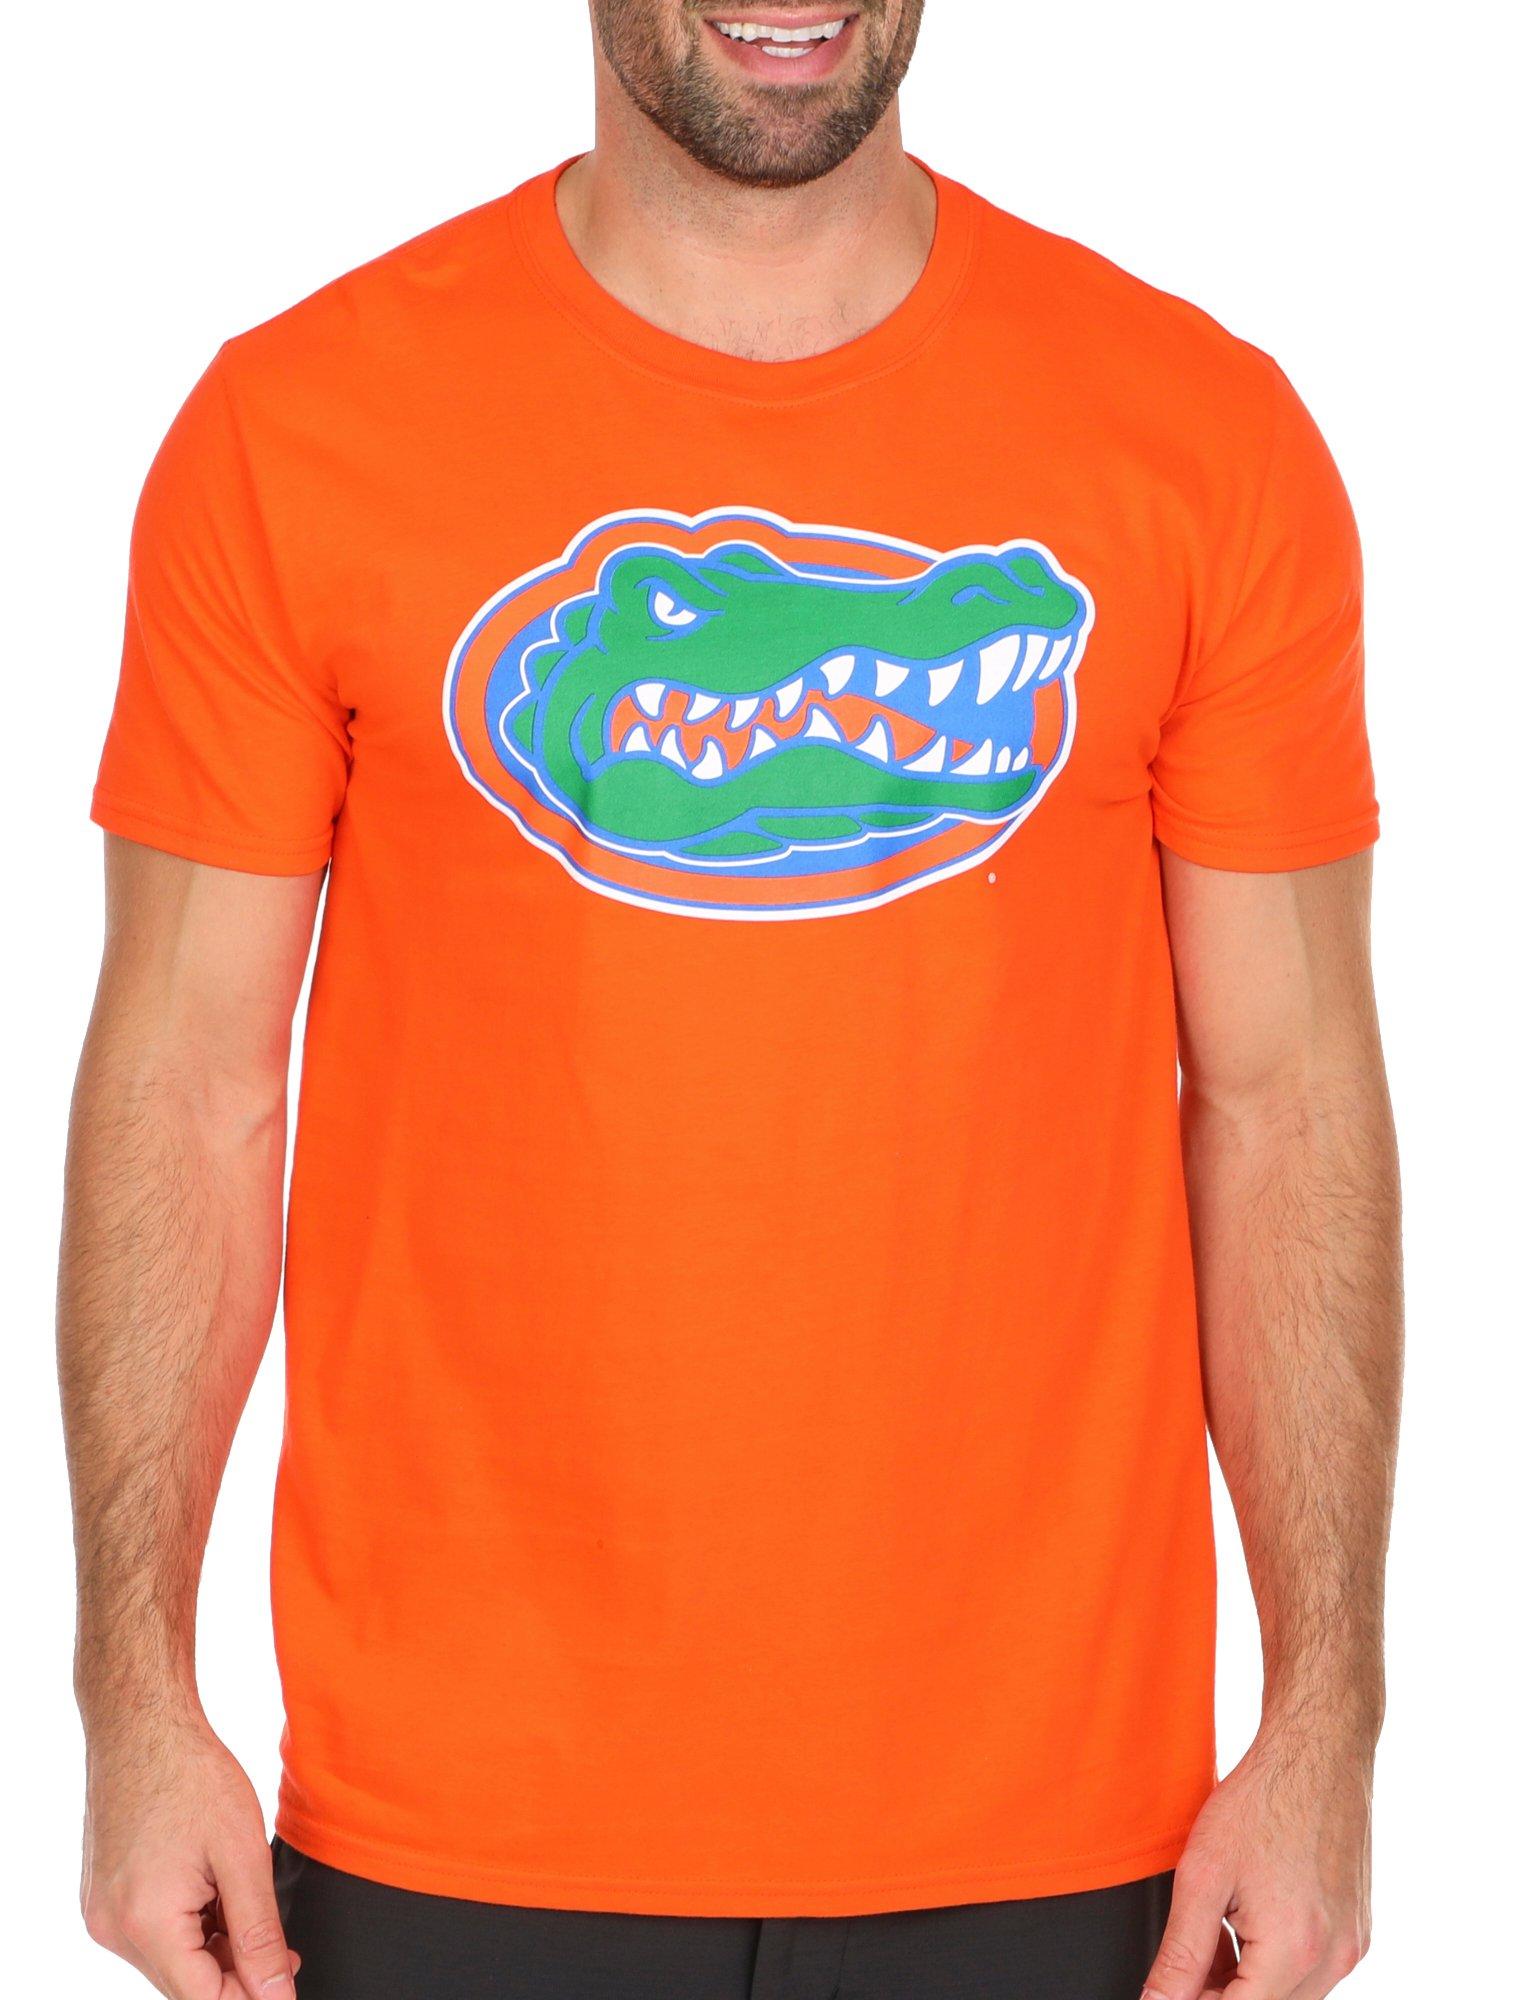 Florida Gators Mens Team Logo Short Sleeve T-Shirt